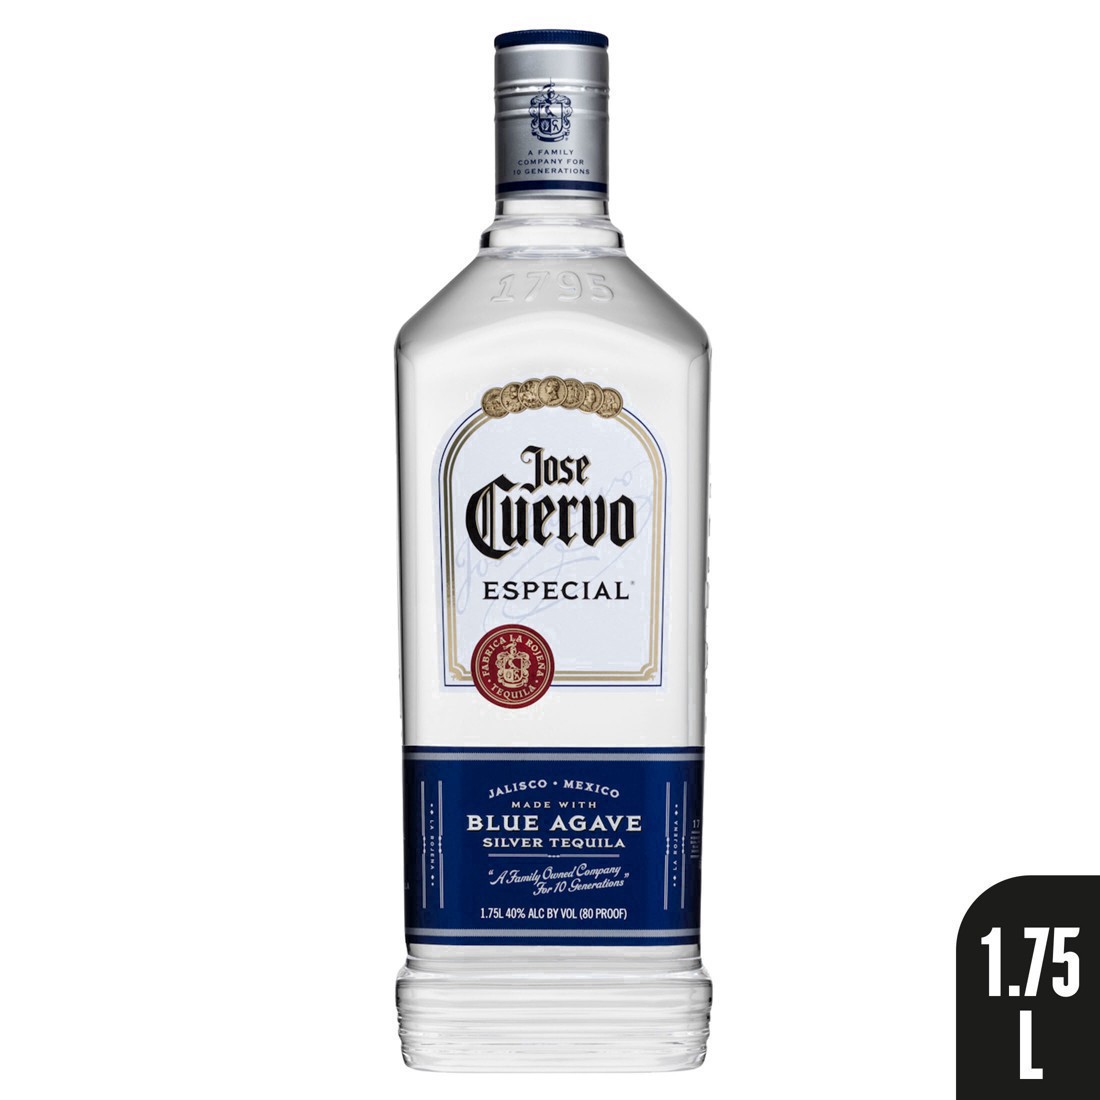 slide 16 of 51, Jose Cuervo Tequila 1.75 lt, 1.75 liter